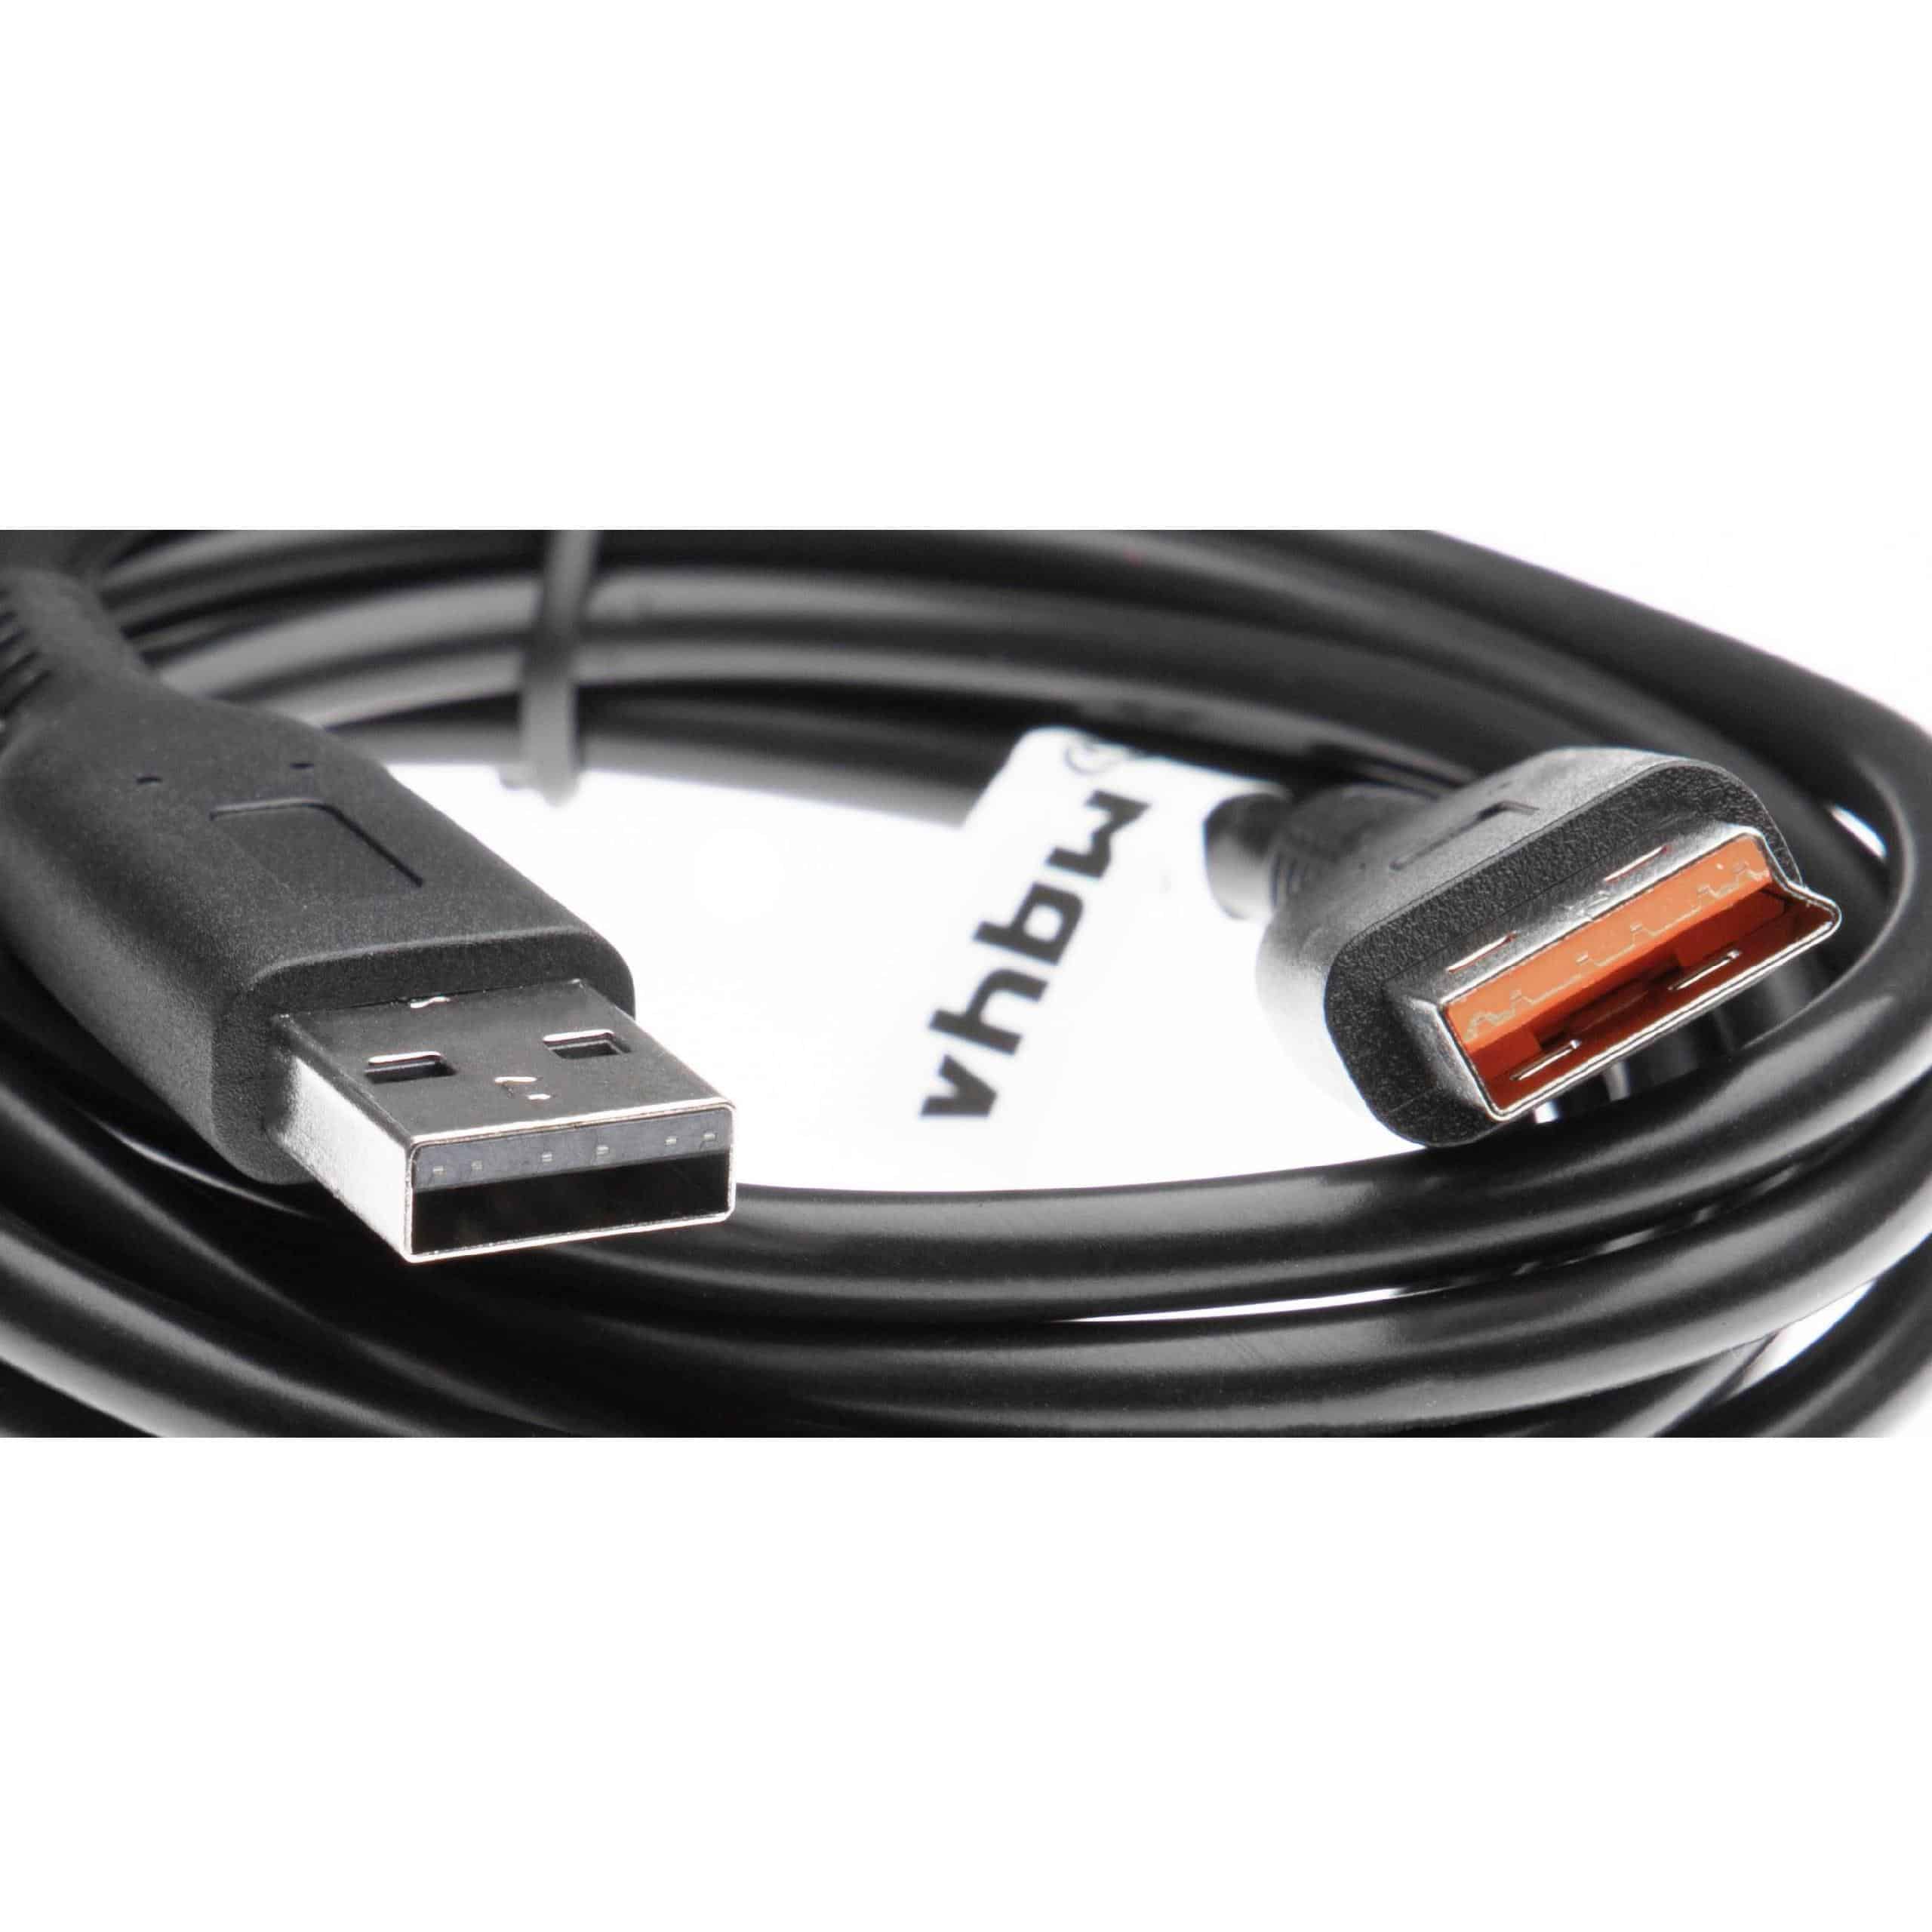 Câble de données USB remplace Lenovo 5L60J33144 pour tablette Lenovo, câble de chargement 2en1 - 200cm